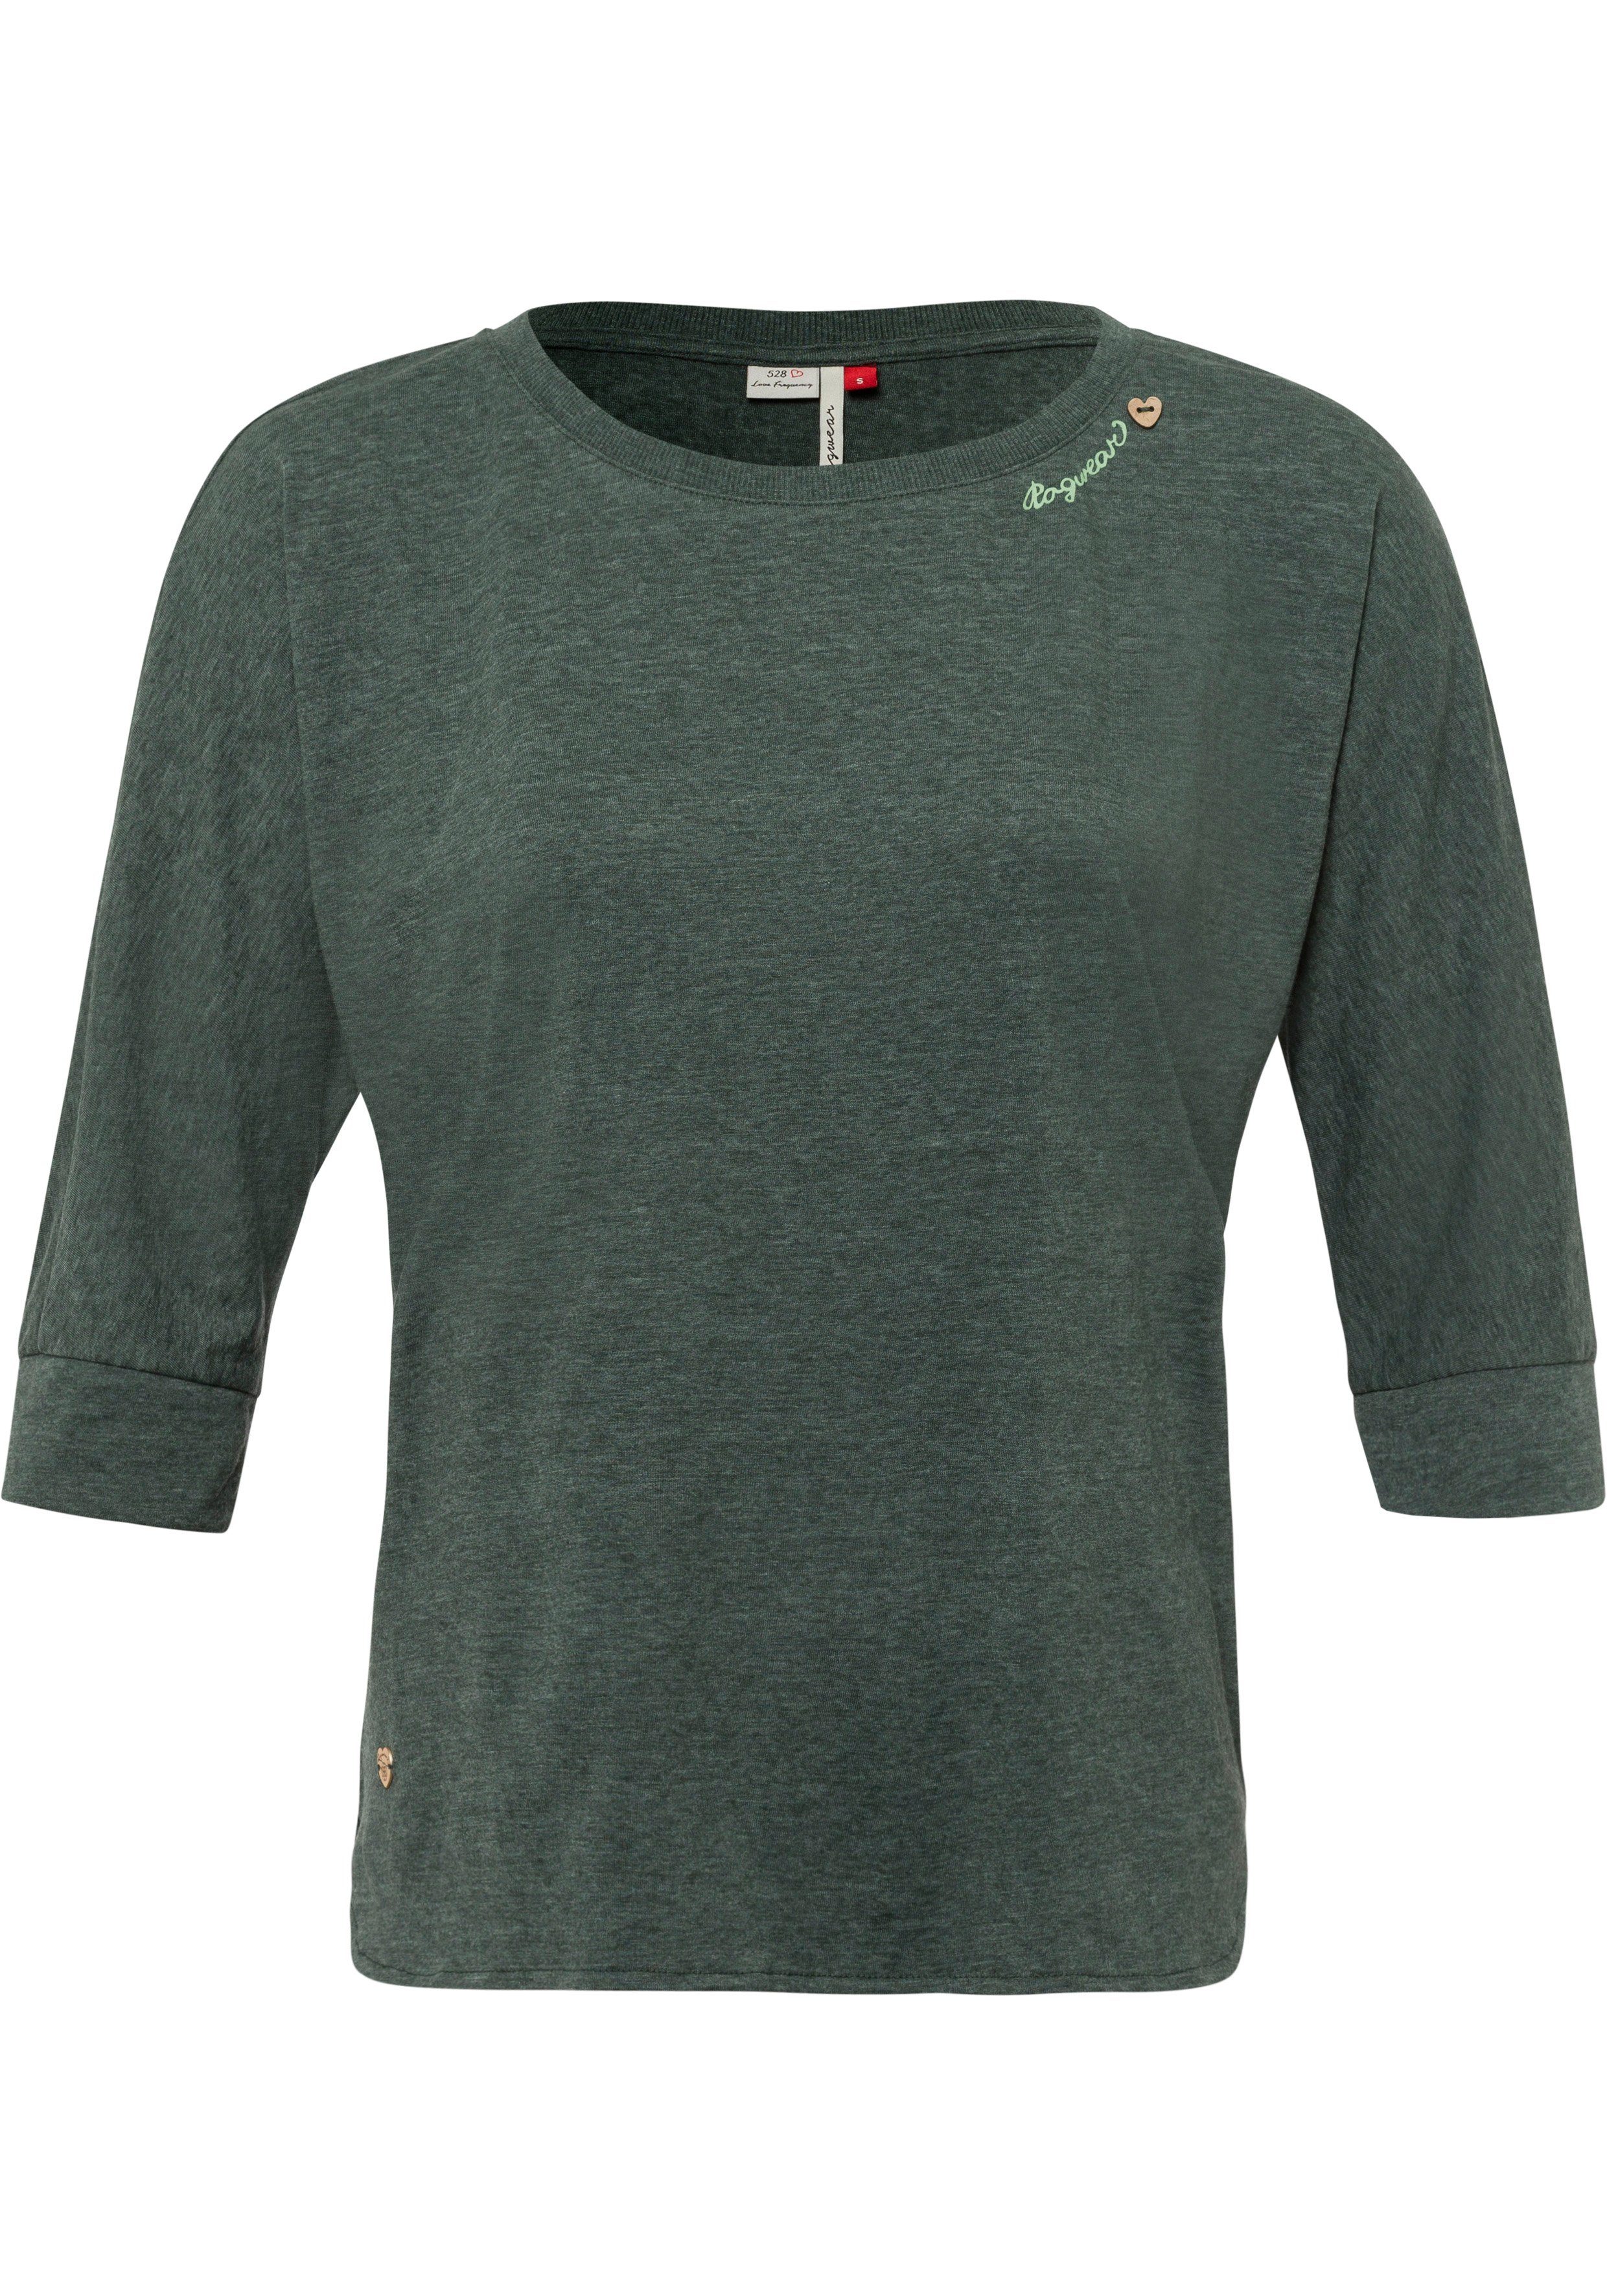 im Zierknopfbesatz in SHIMONA green Holzoptik mit dark Herz-Design natürlicher T-Shirt Ragwear